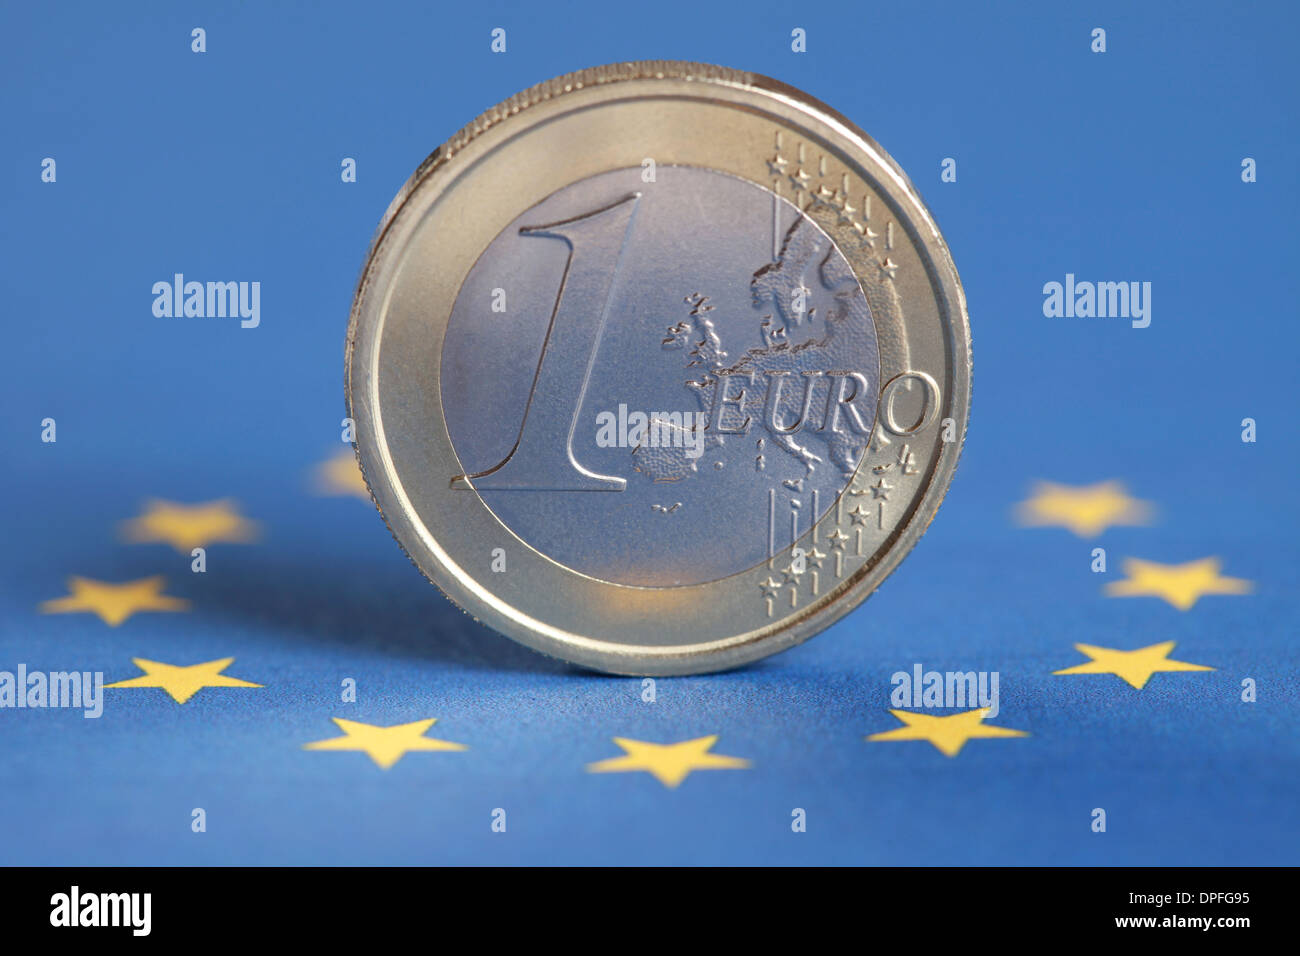 One Euro coin on the European Union flag Stock Photo